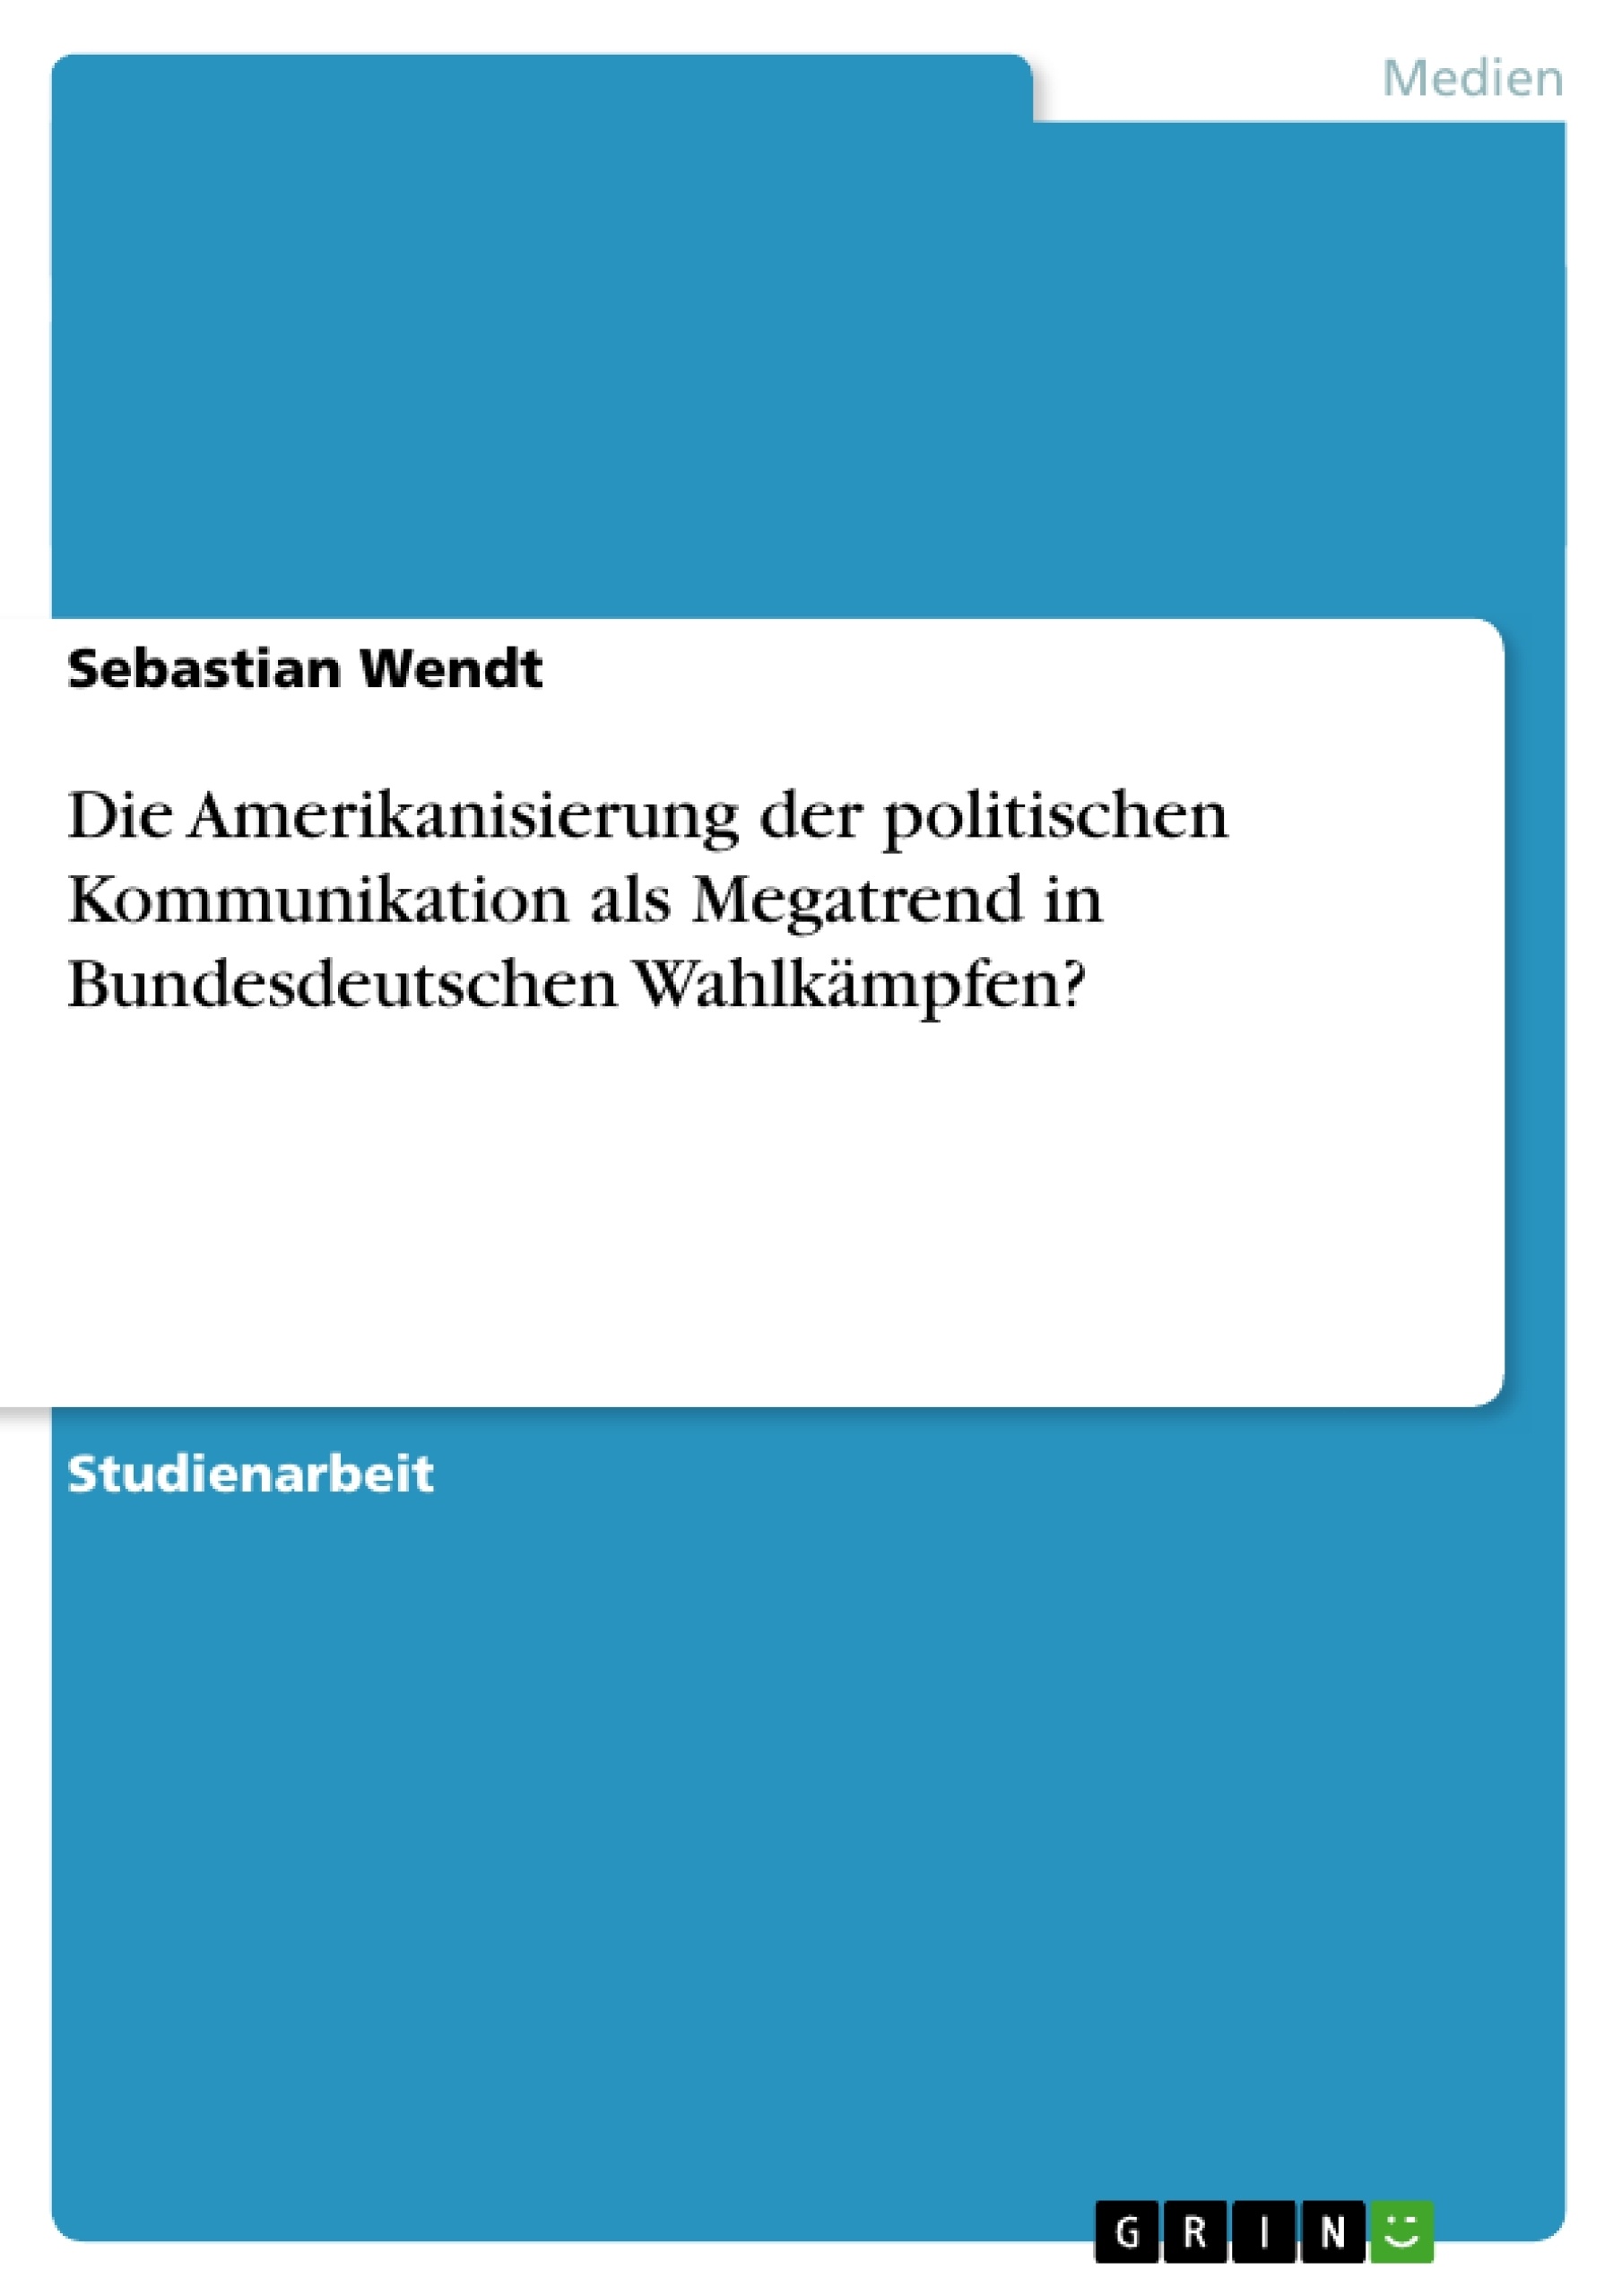 Título: Die Amerikanisierung der politischen Kommunikation als Megatrend in Bundesdeutschen Wahlkämpfen?